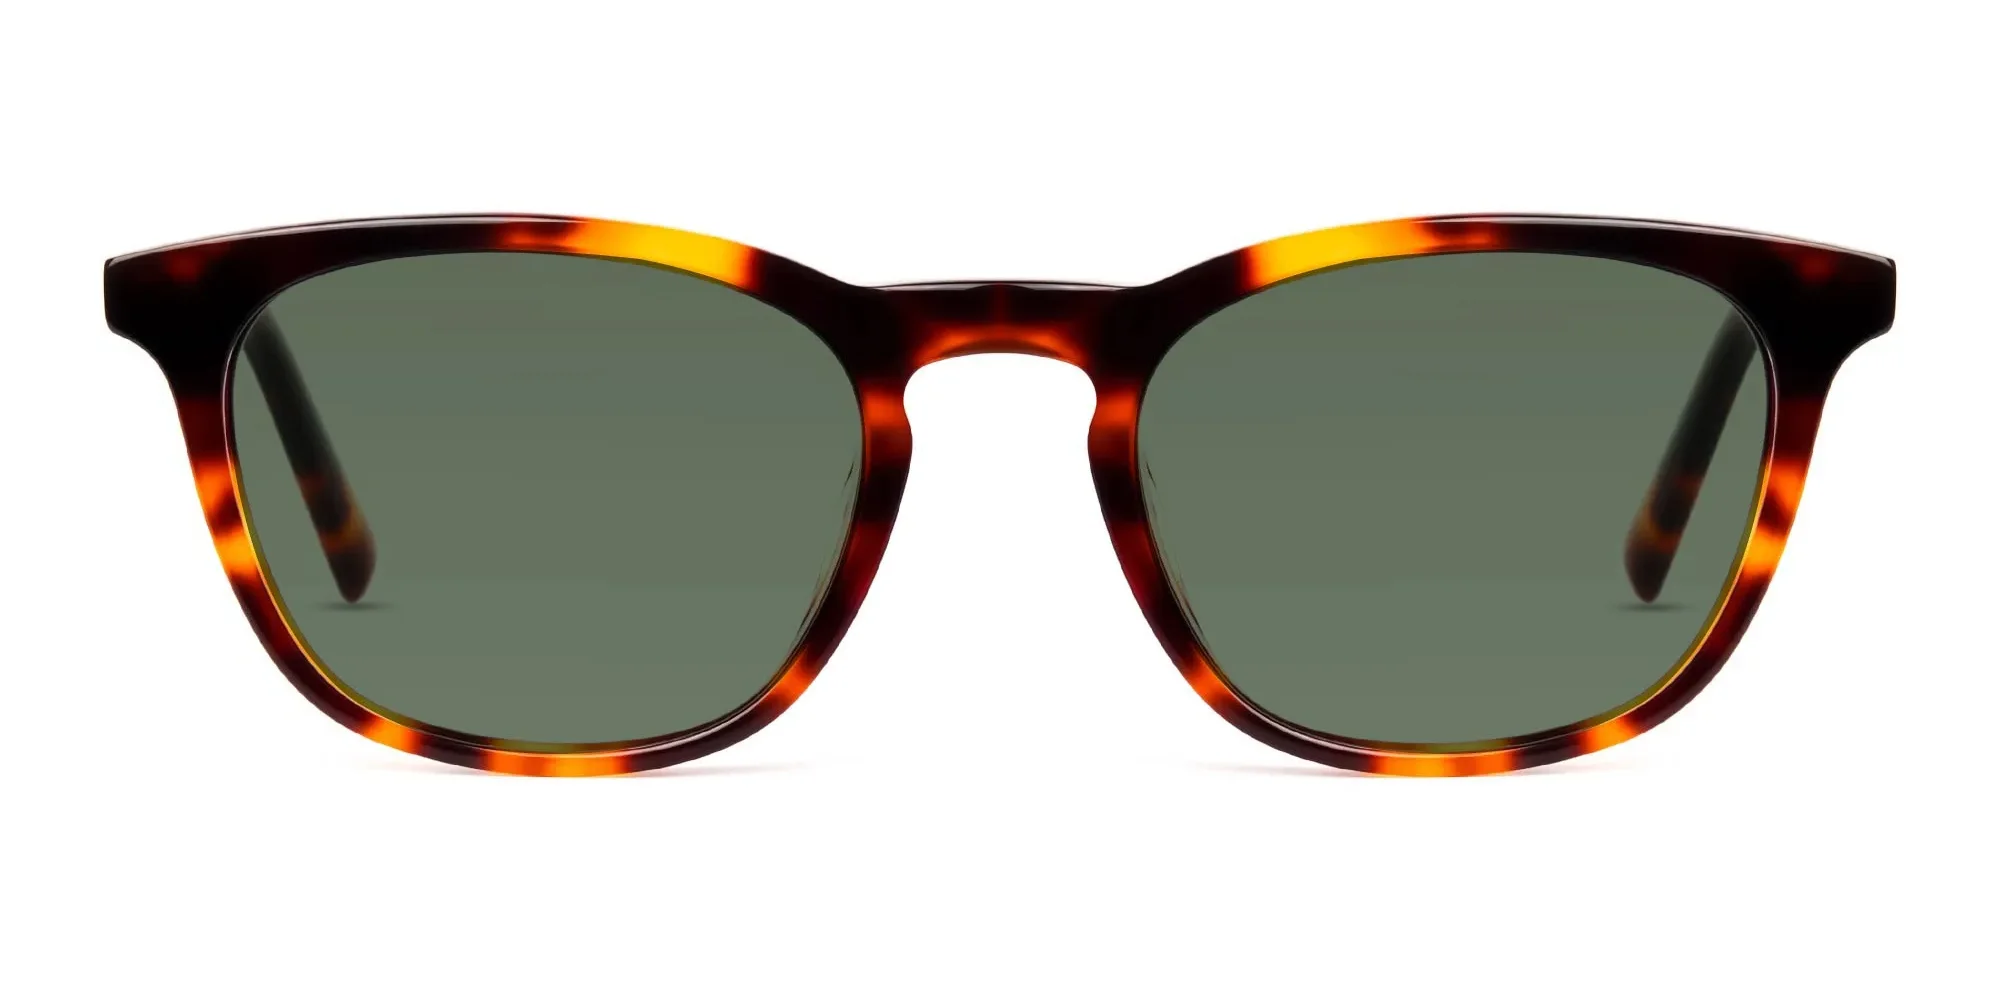 Green Tortoiseshell Square Sunglasses